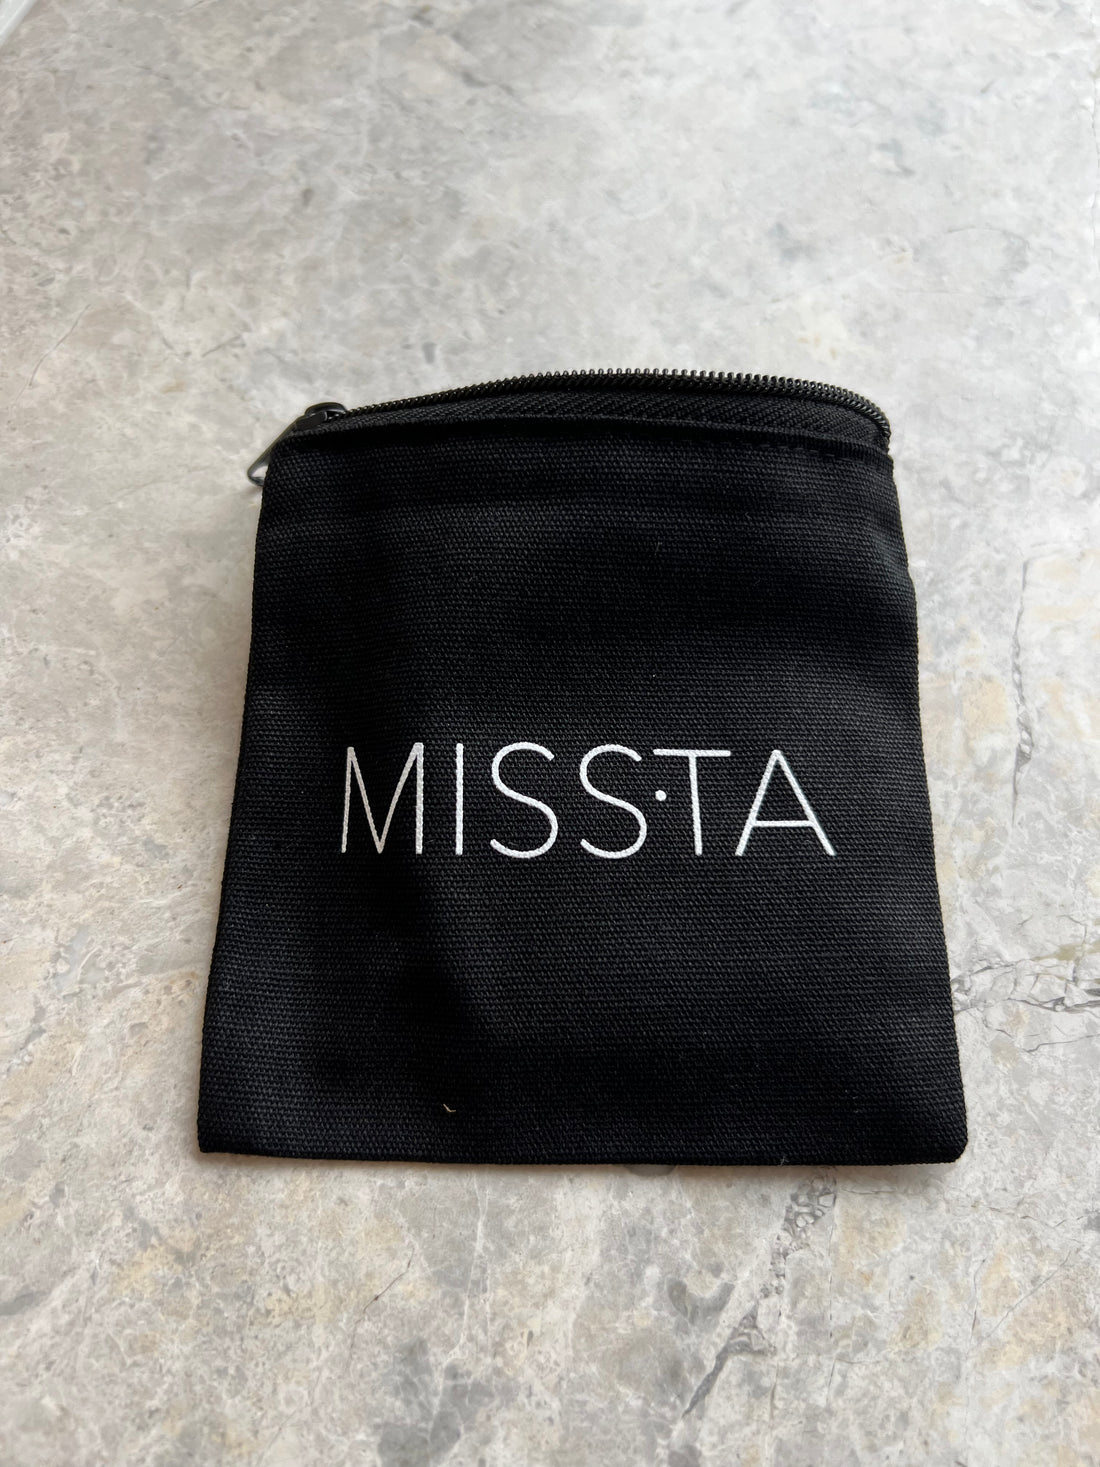 Missta Pocket - Missta